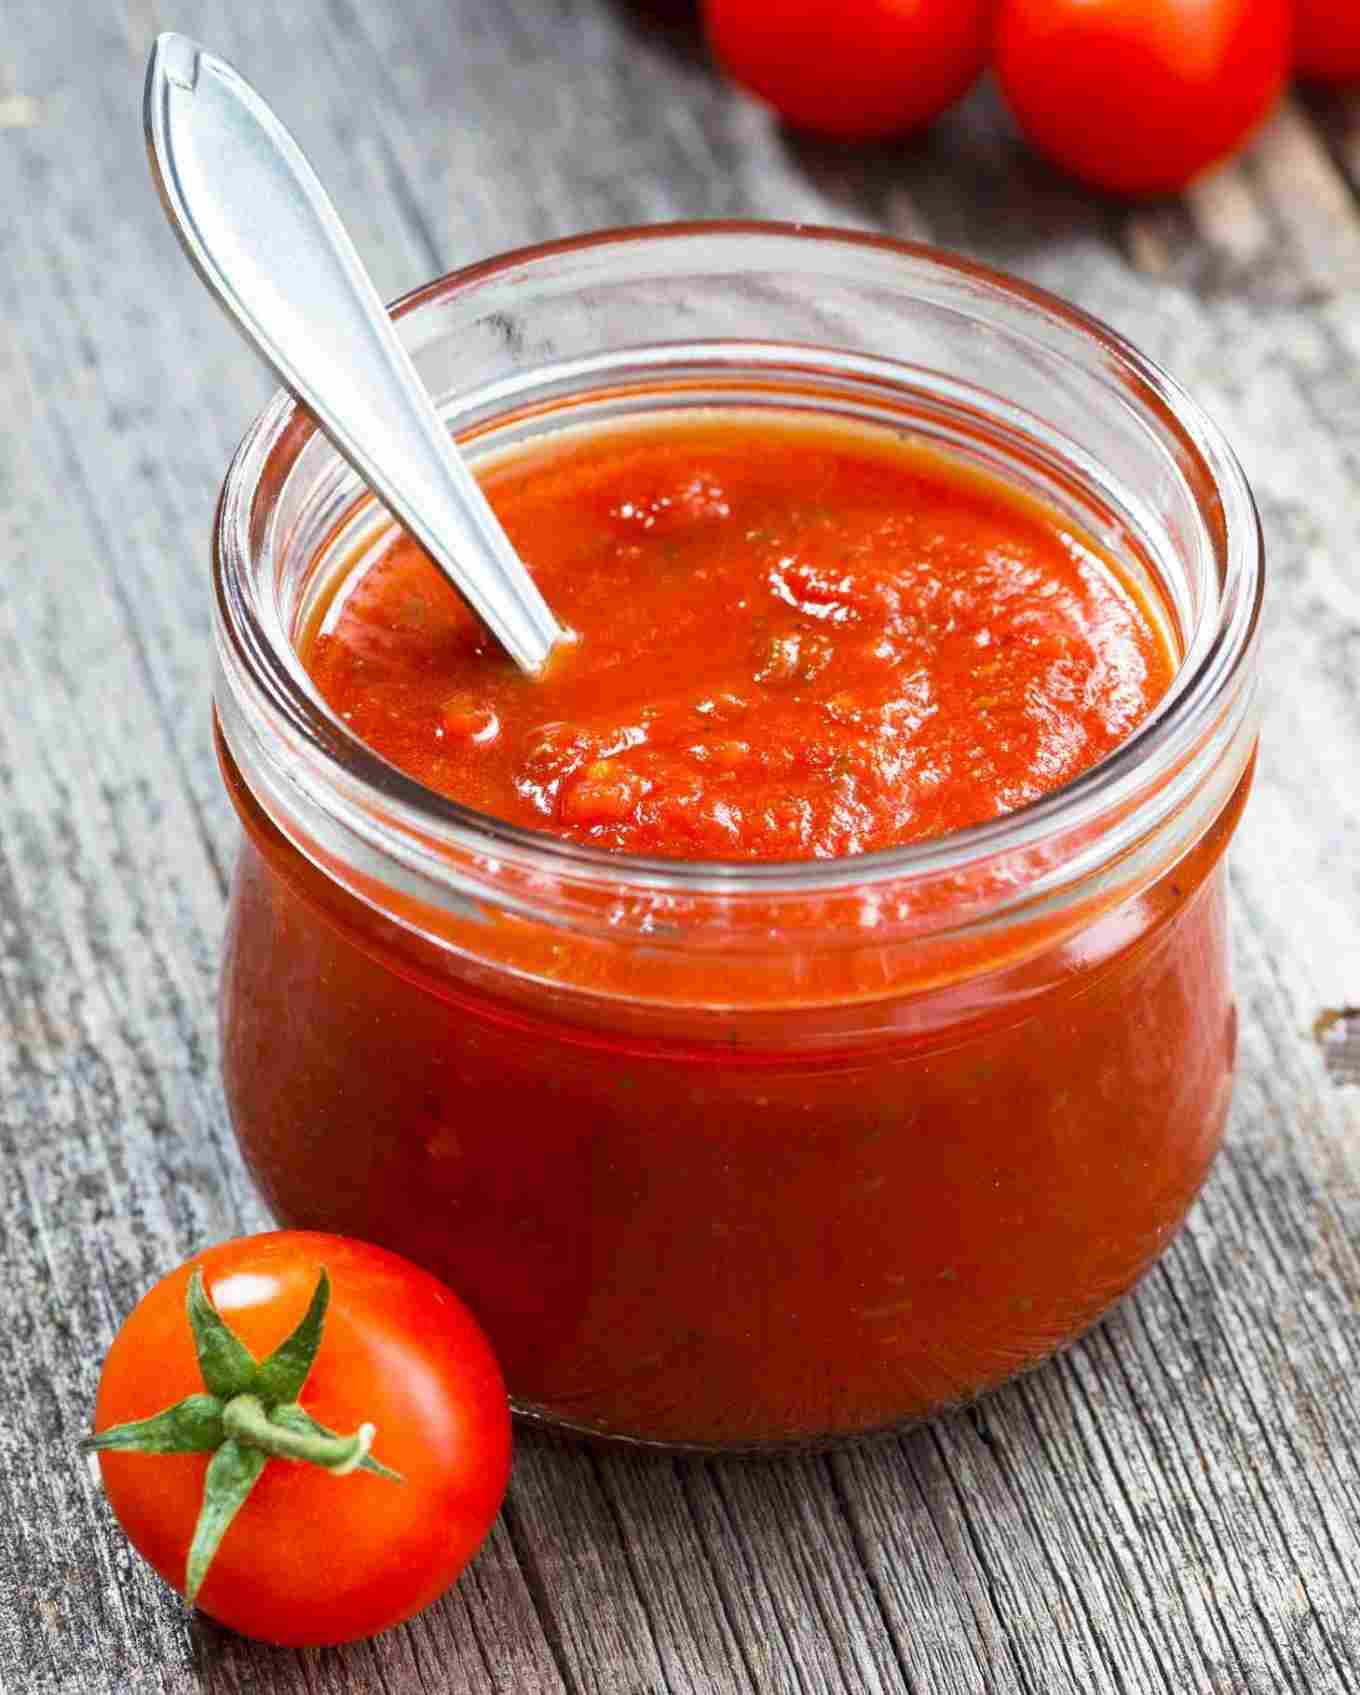 Tomatensoße und gekochte Tomaten sind erlaubt und reizen den Magen nicht